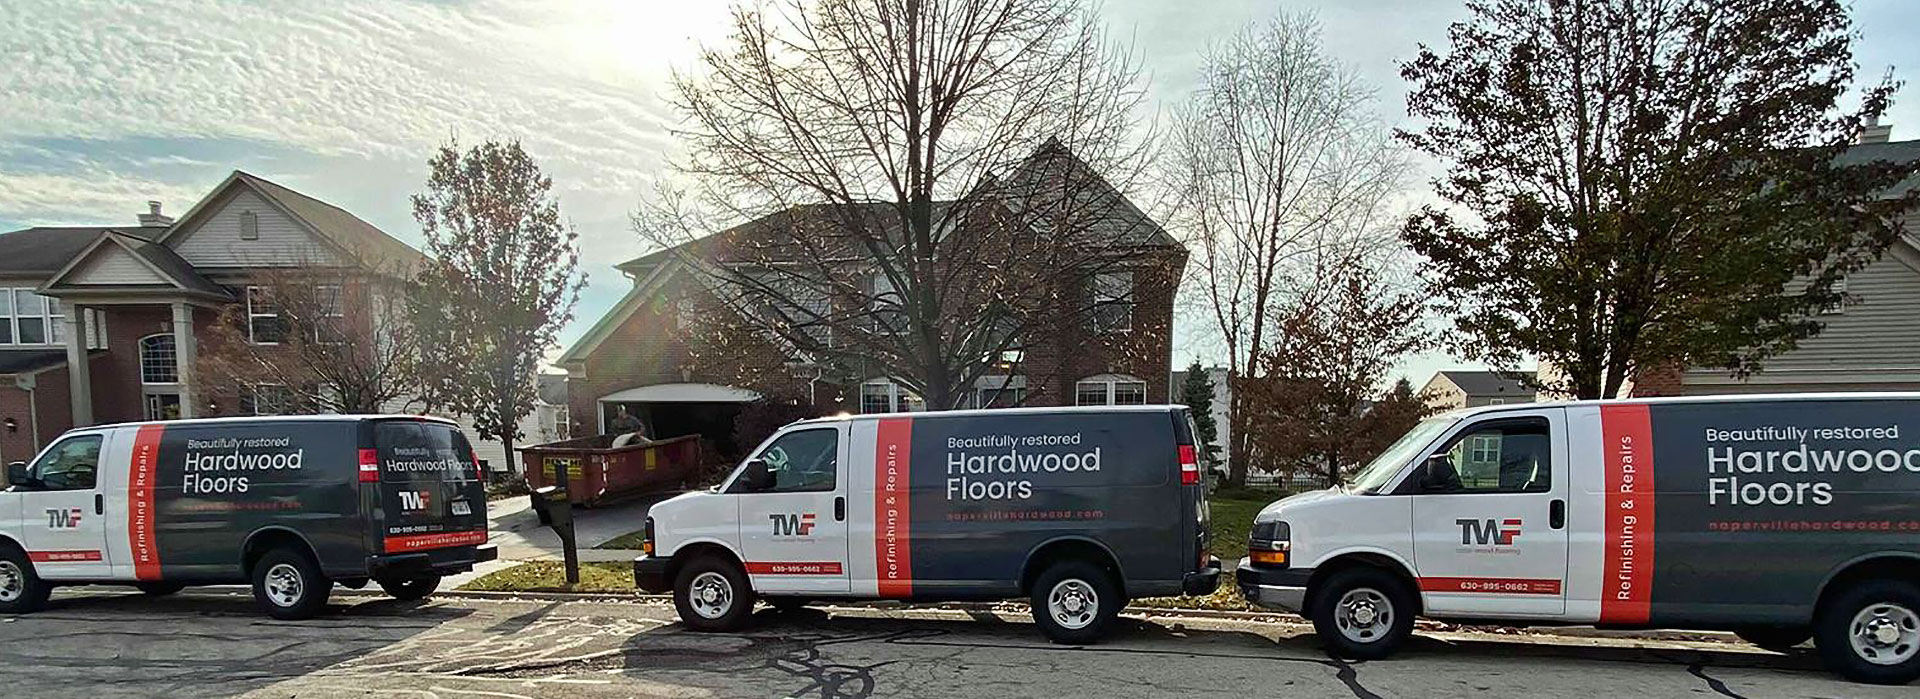 Hardwood Floor Refinishing Vans in front of Naperville House